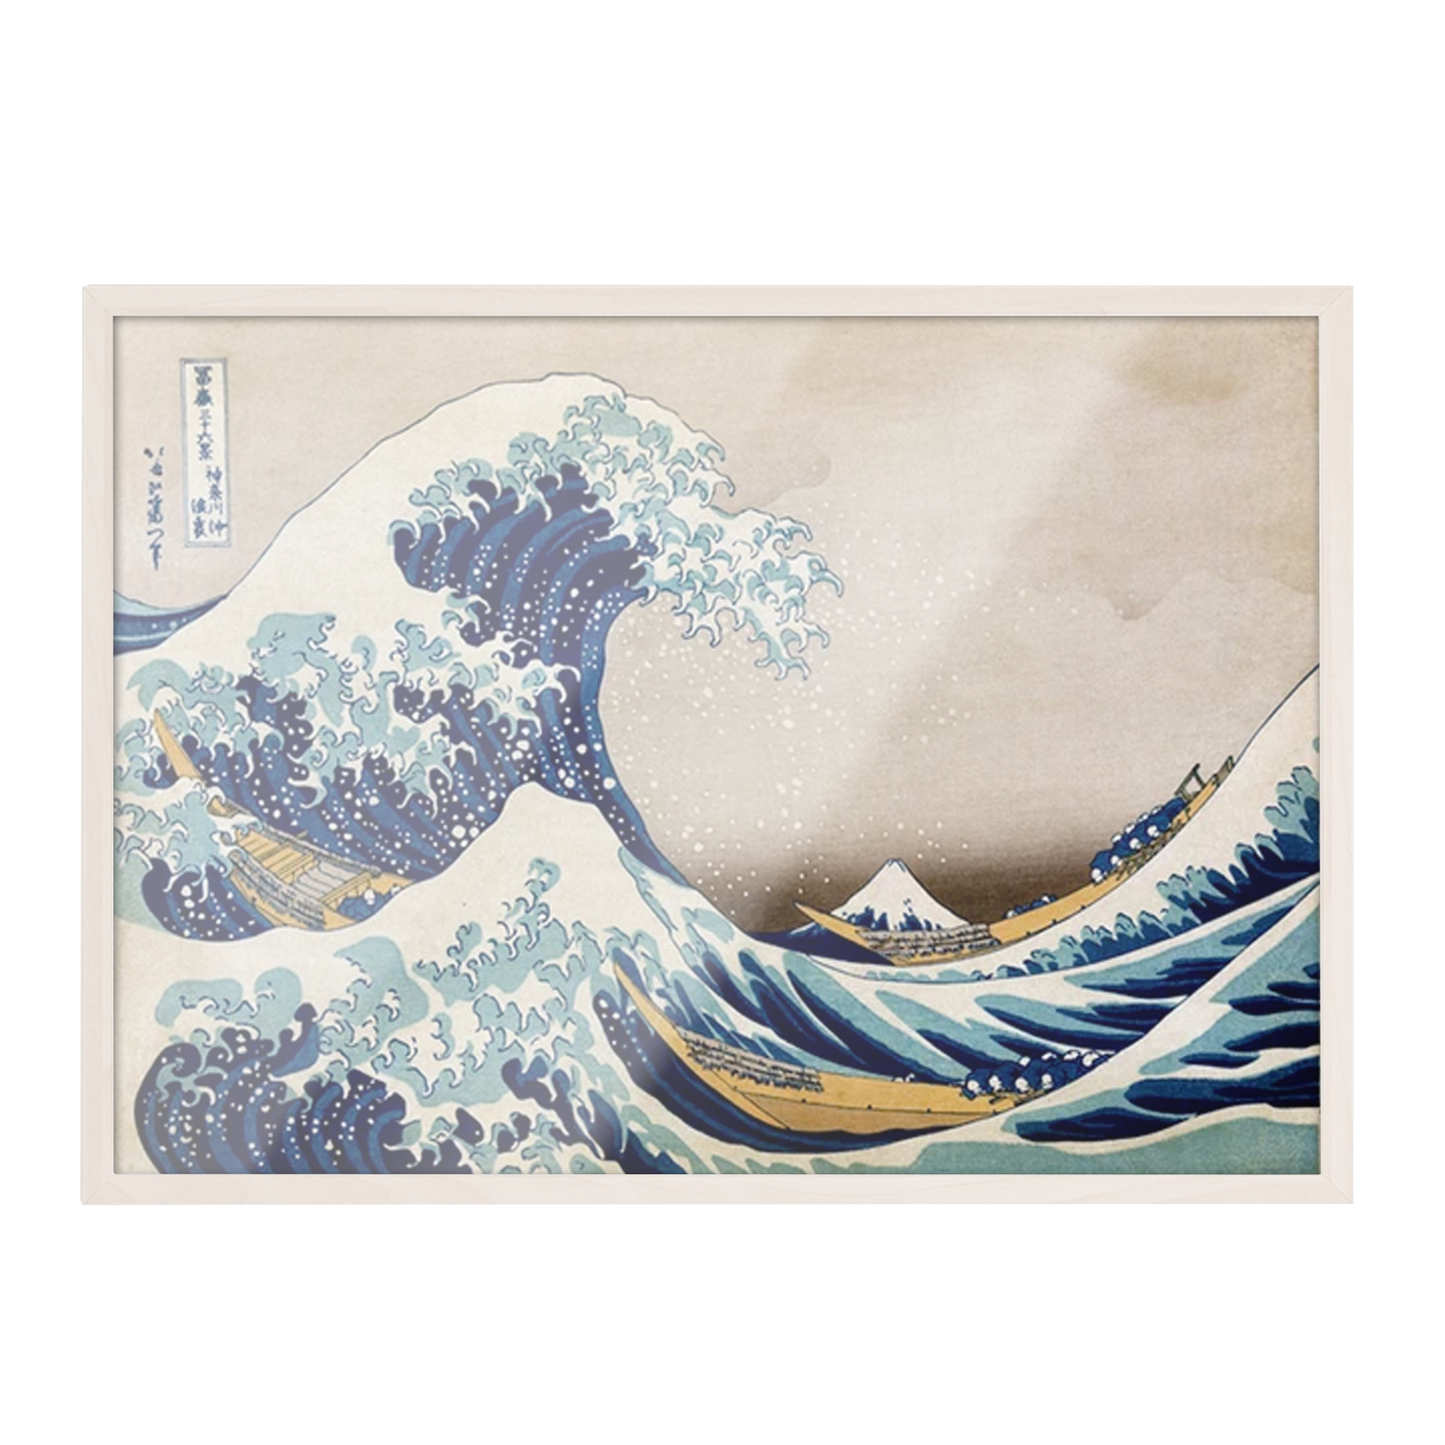 La gran ola de Kanagawa 123